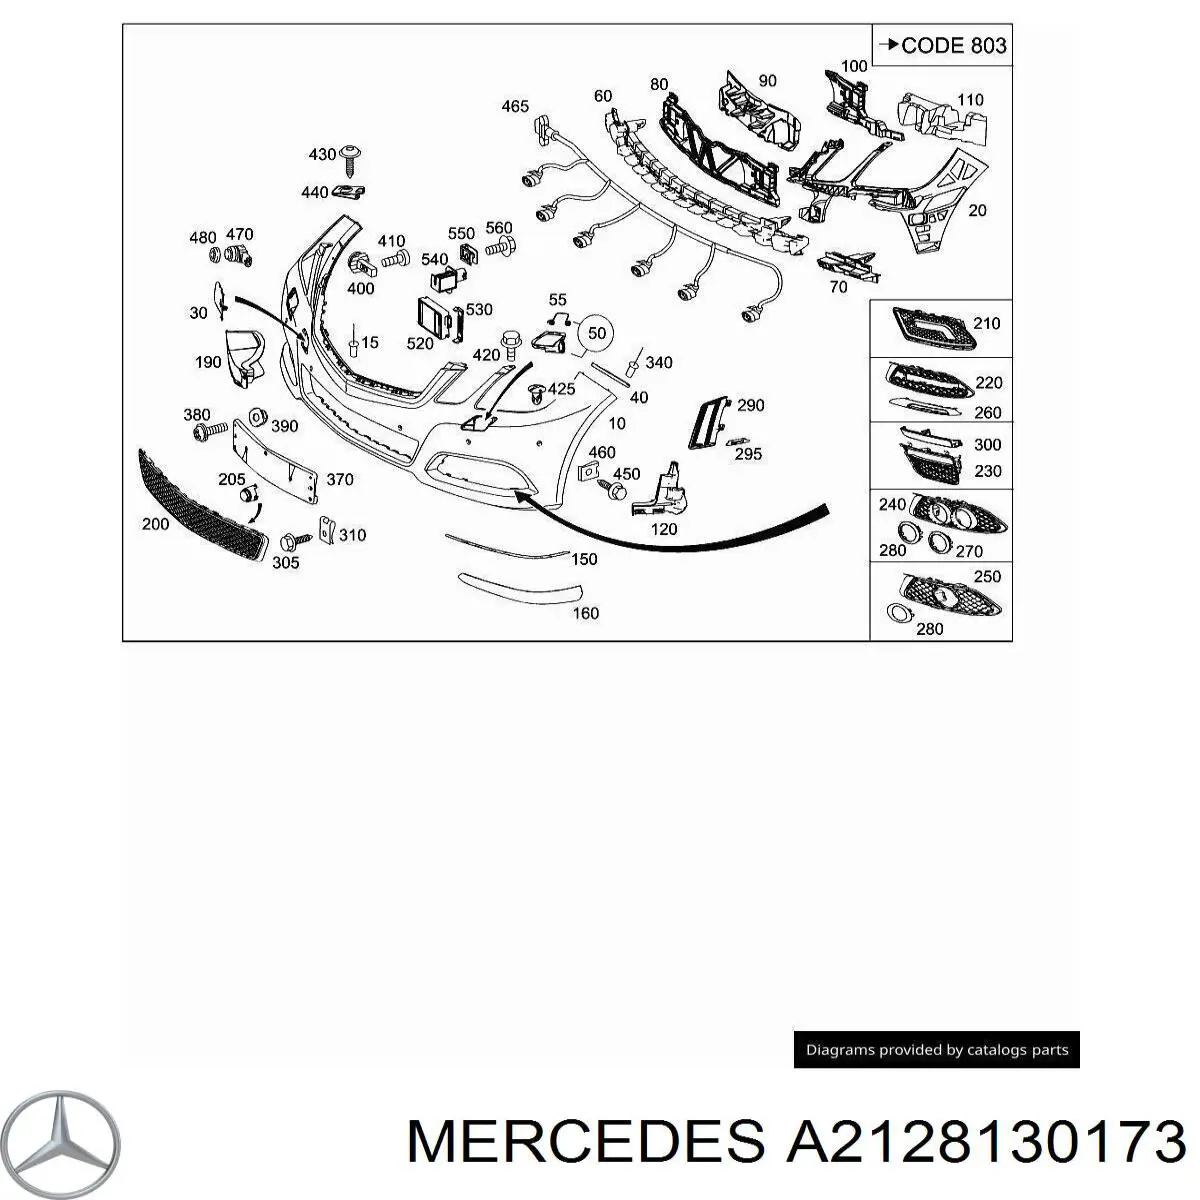 2128130173 Mercedes ободок (окантовка фары противотуманной левой)